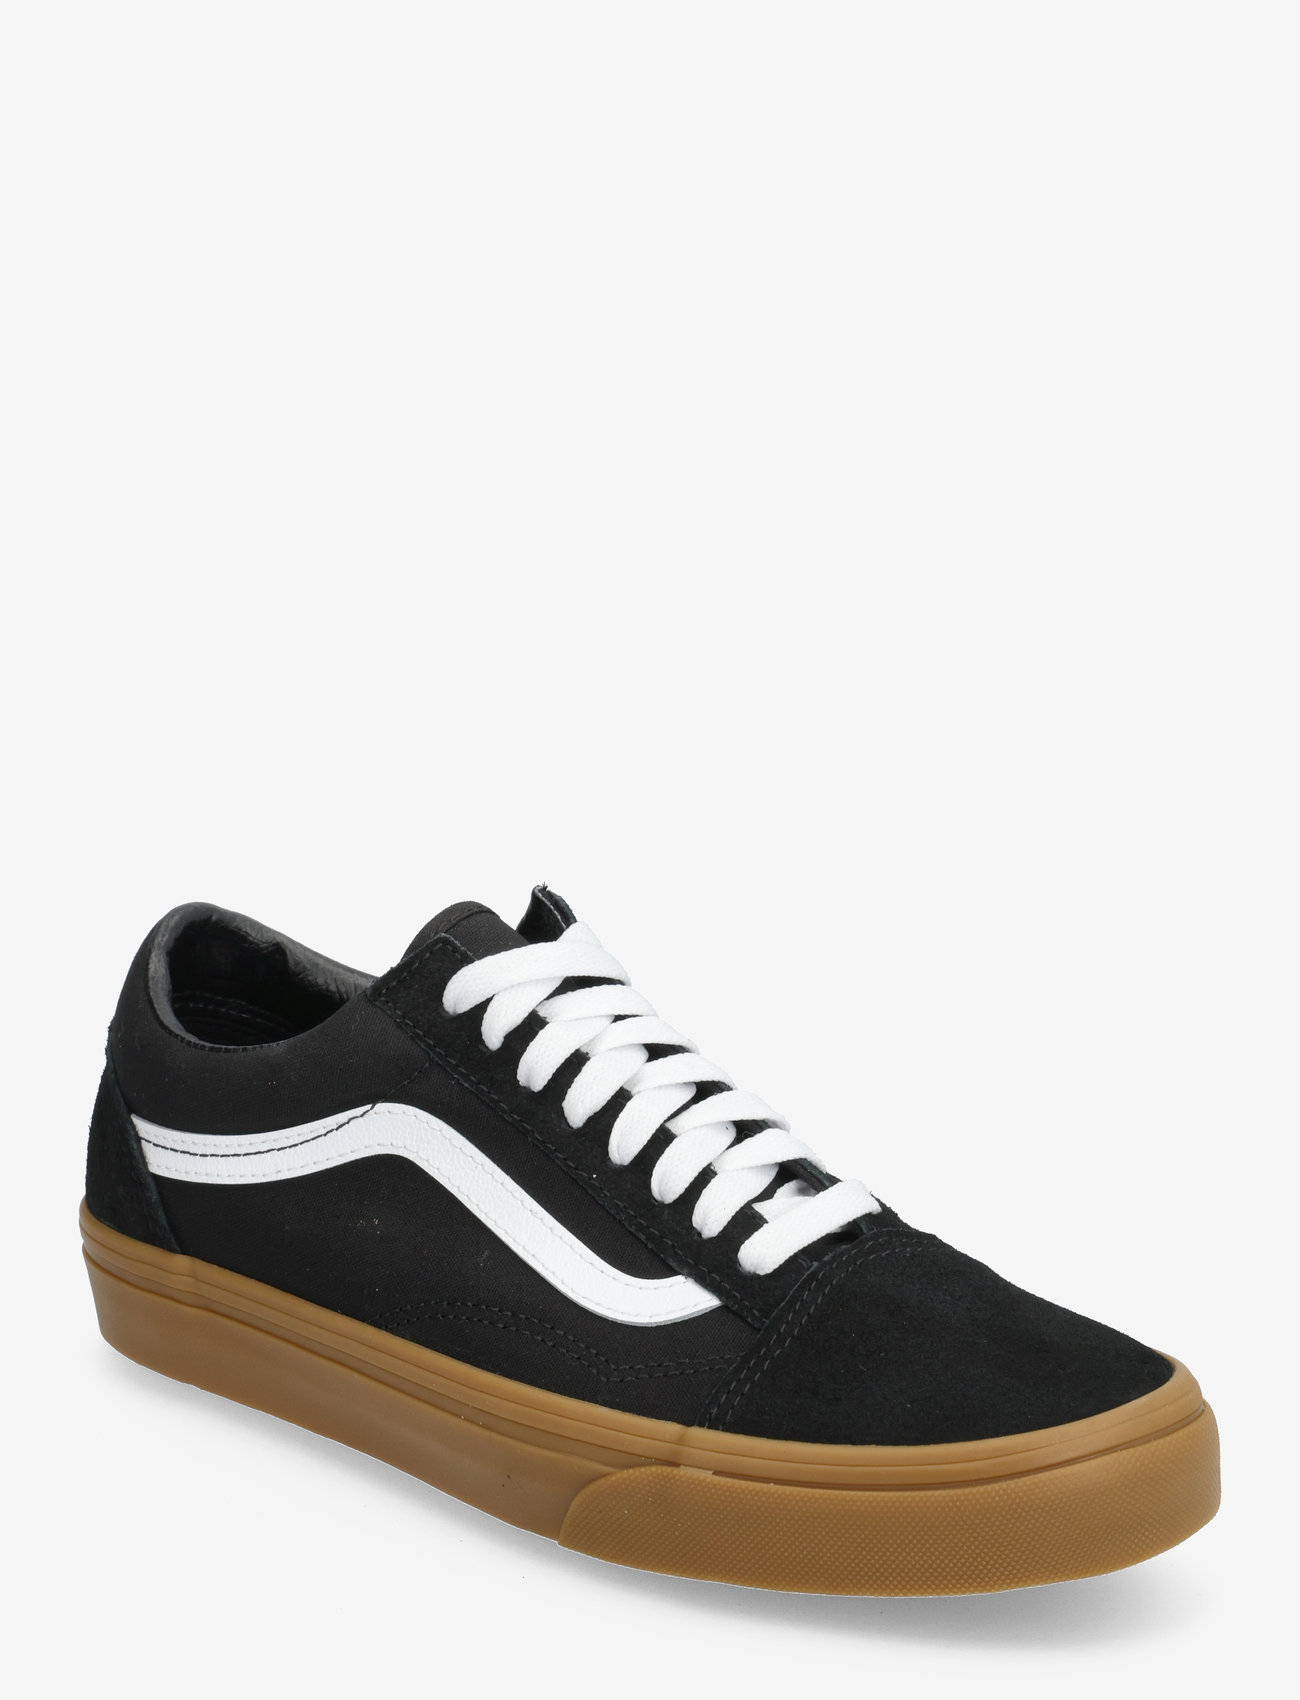 VANS - Old Skool - low top sneakers - black/gum - 0